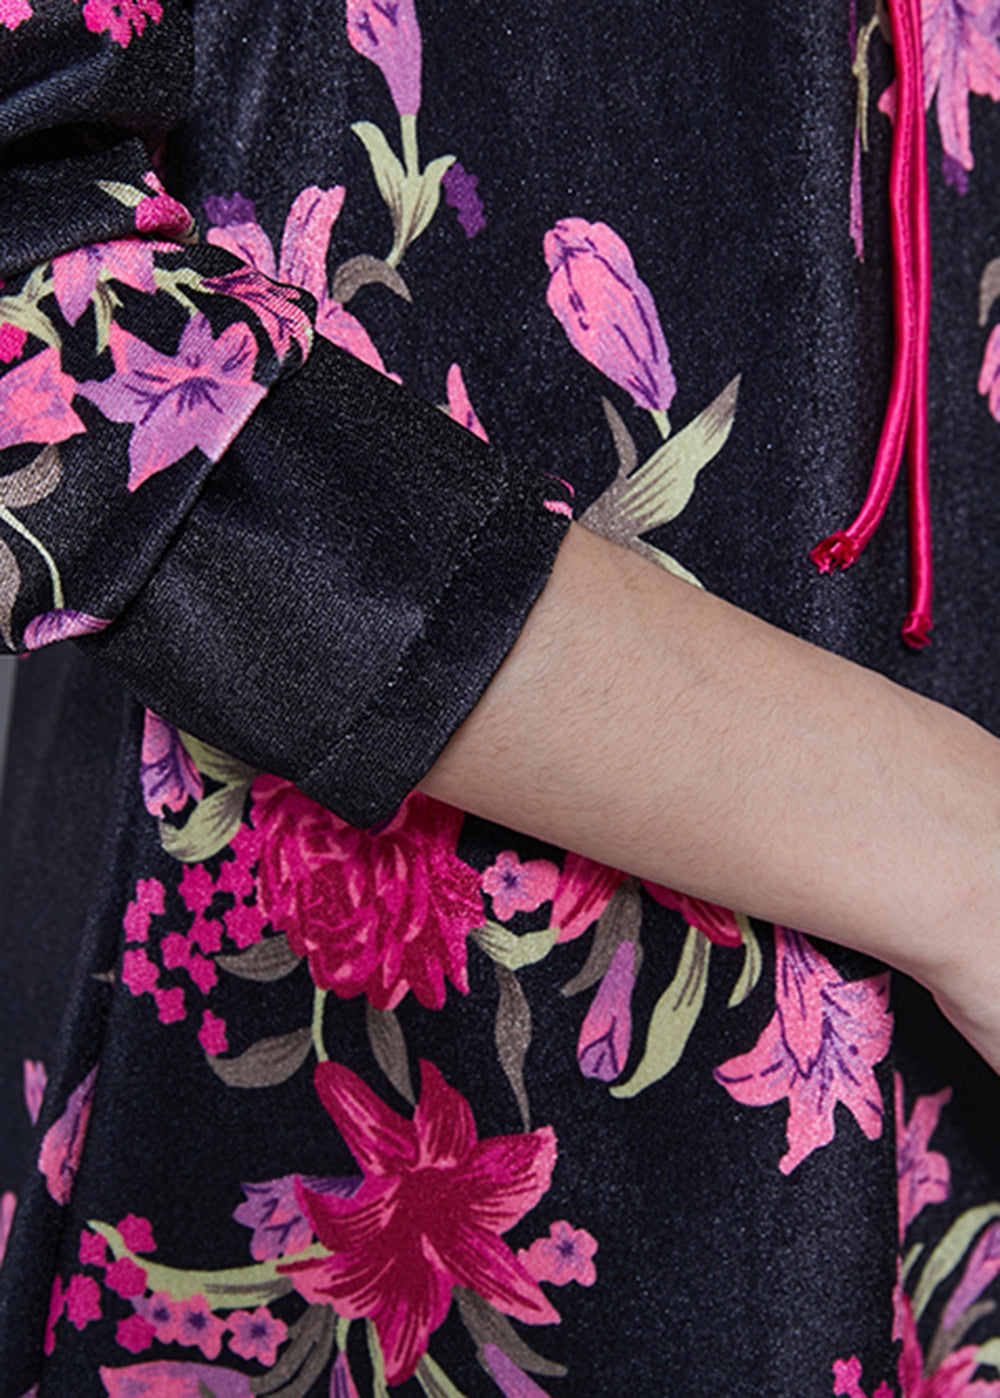 Chinese Style Black Print Silk Velvet Mini Dresses Spring